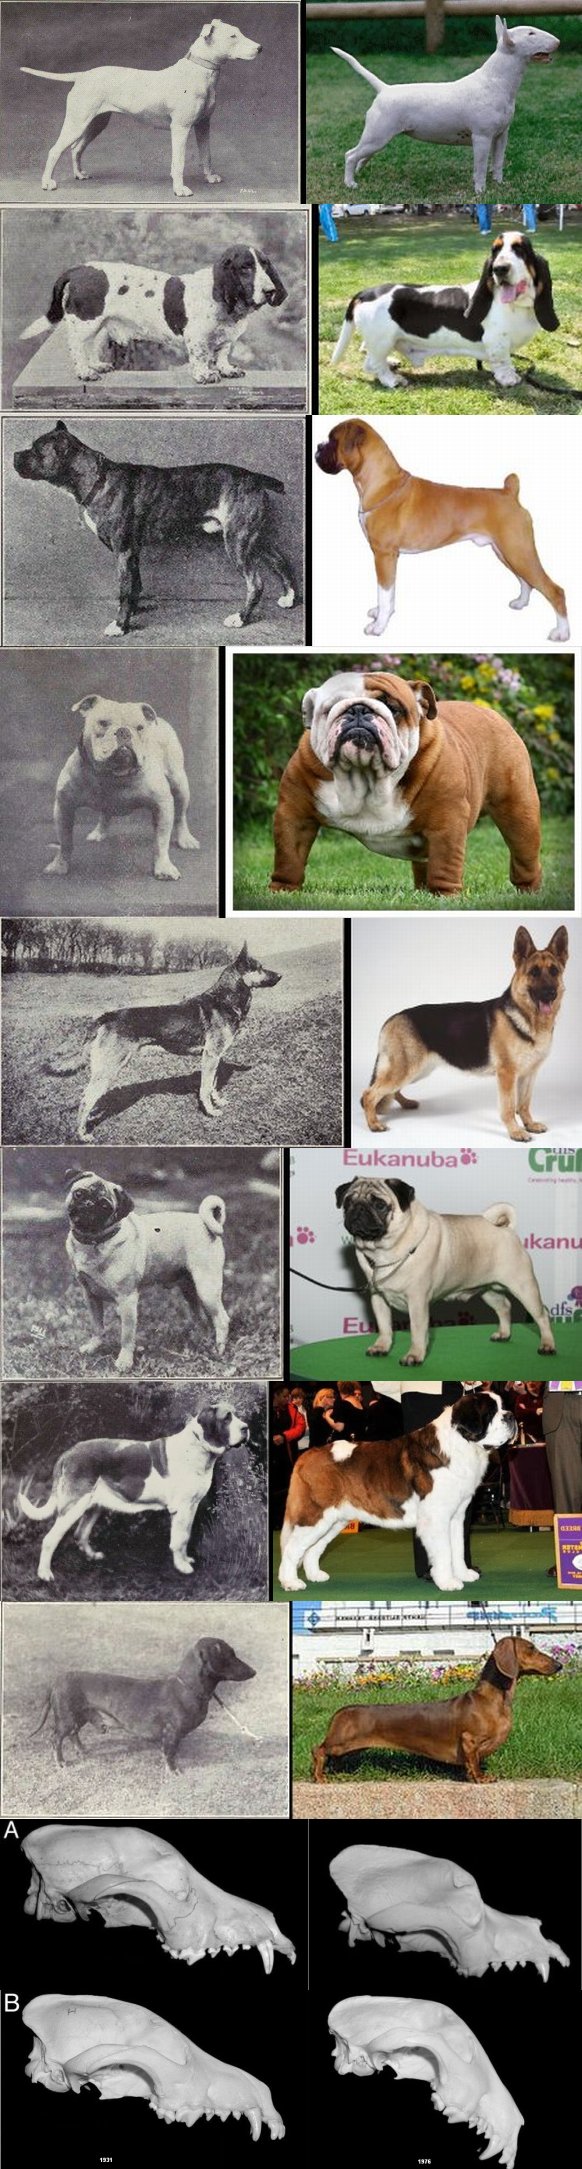 From the top: Bulldog, GSD, Pug, St. Bernard, Dachshund, St. Bernard skull (1850/1967), Bull Terrier skull (1931/1976)